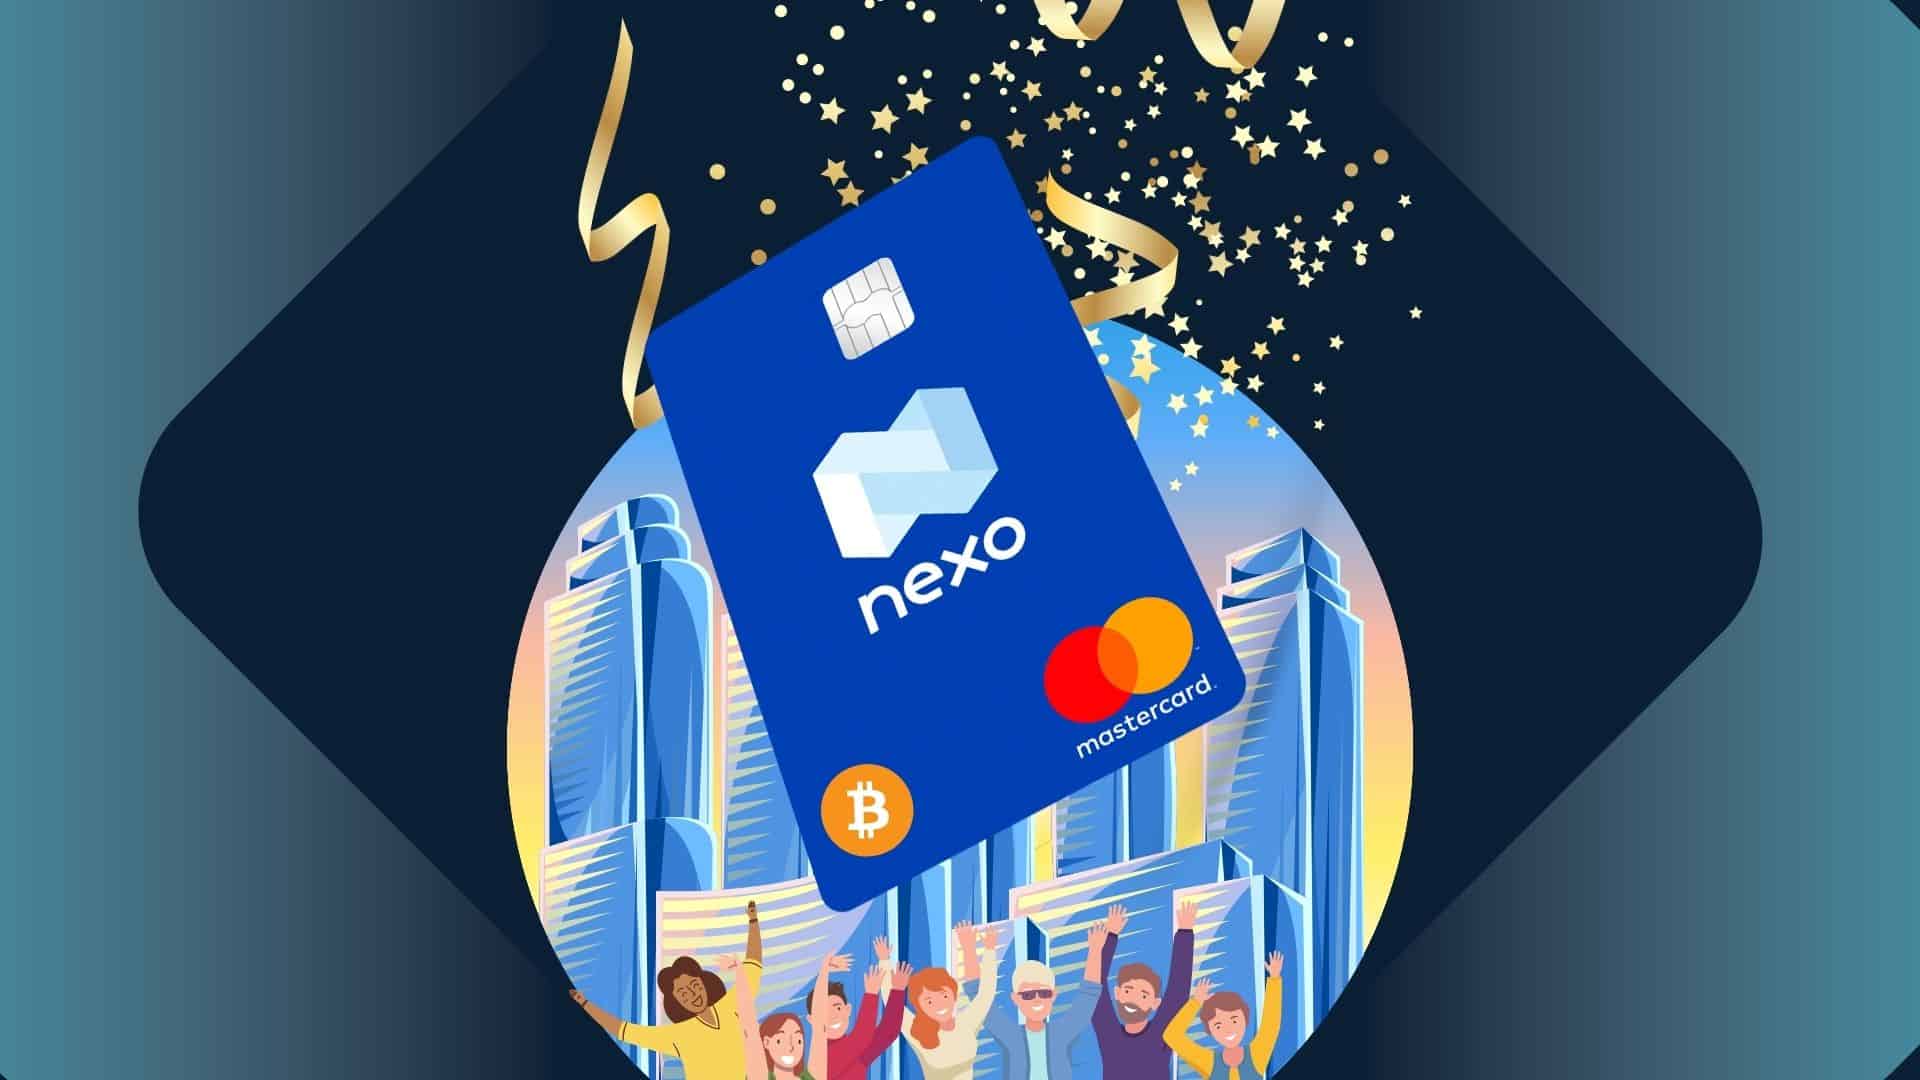 Nexo выпустили первую кредитную карту с криптообеспечением. Заглавный коллаж новости.